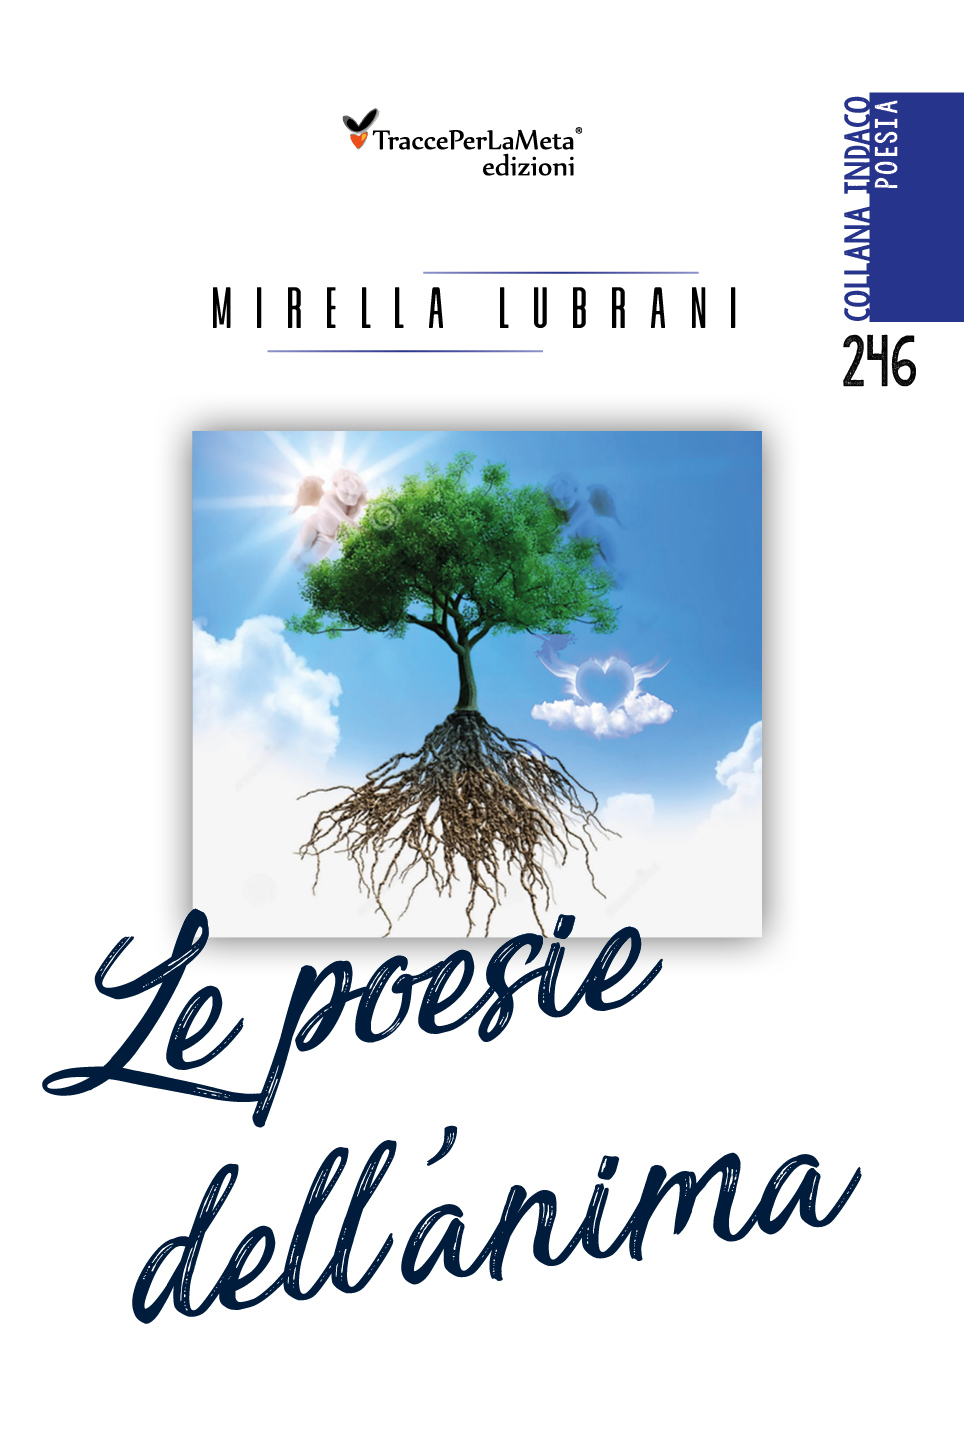 E’ uscito “Le poesie dell’anima” di Mirella Lubrani